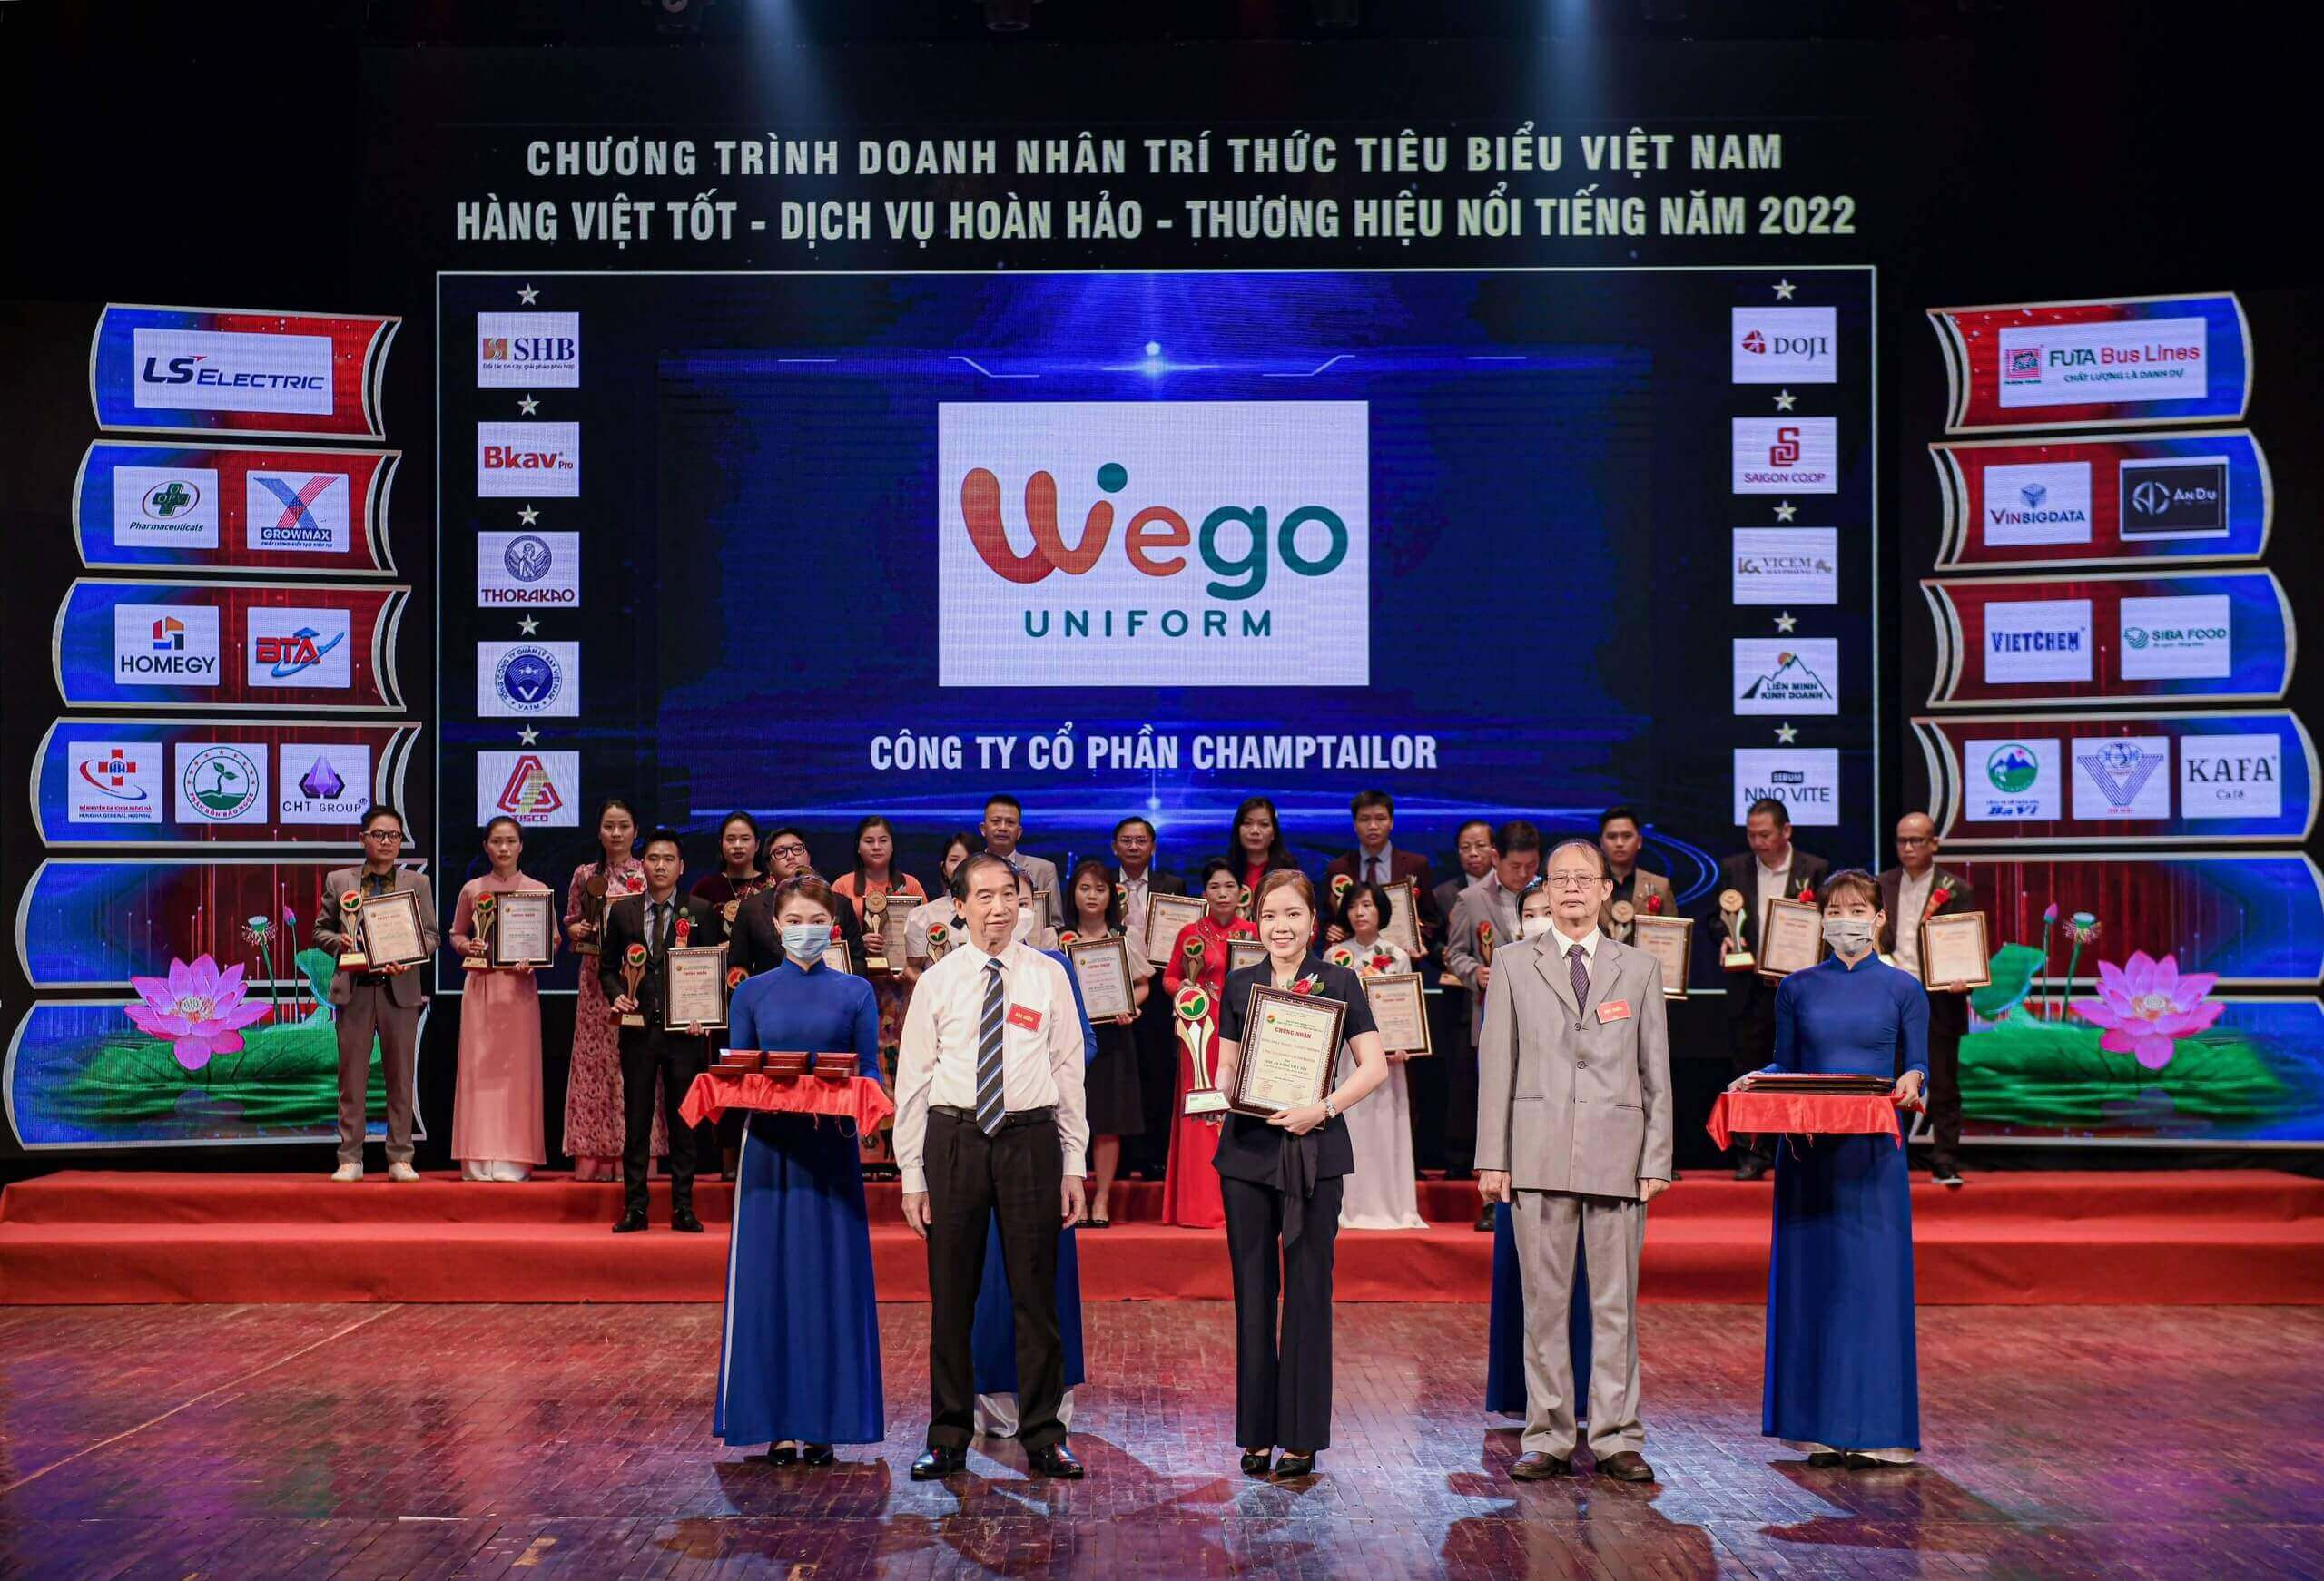 Wego Uniform trên sân khấu nhận giải thưởng Hàng Việt tốt vì quyền lợi người tiêu dùng